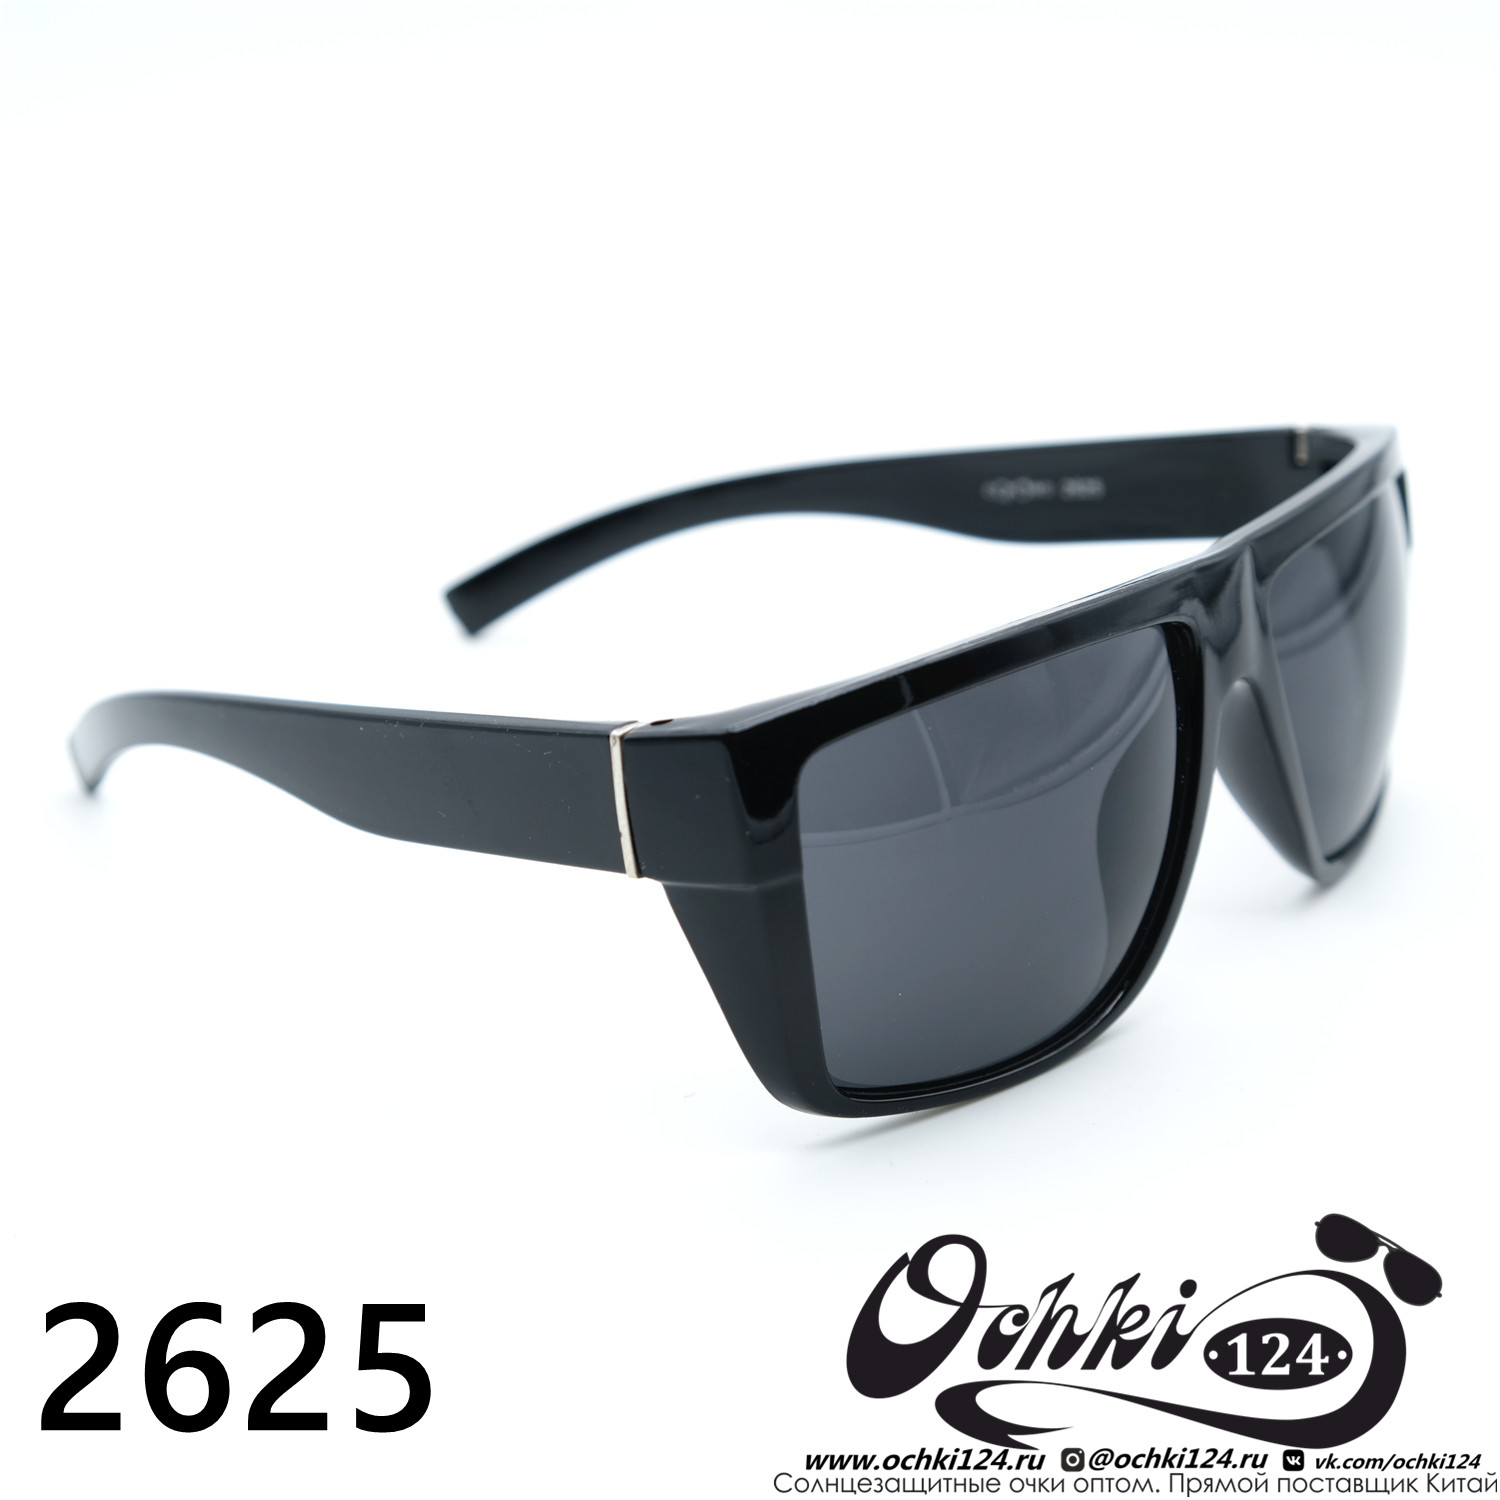  Солнцезащитные очки картинка Мужские Coroes  Квадратные 2625-C1 